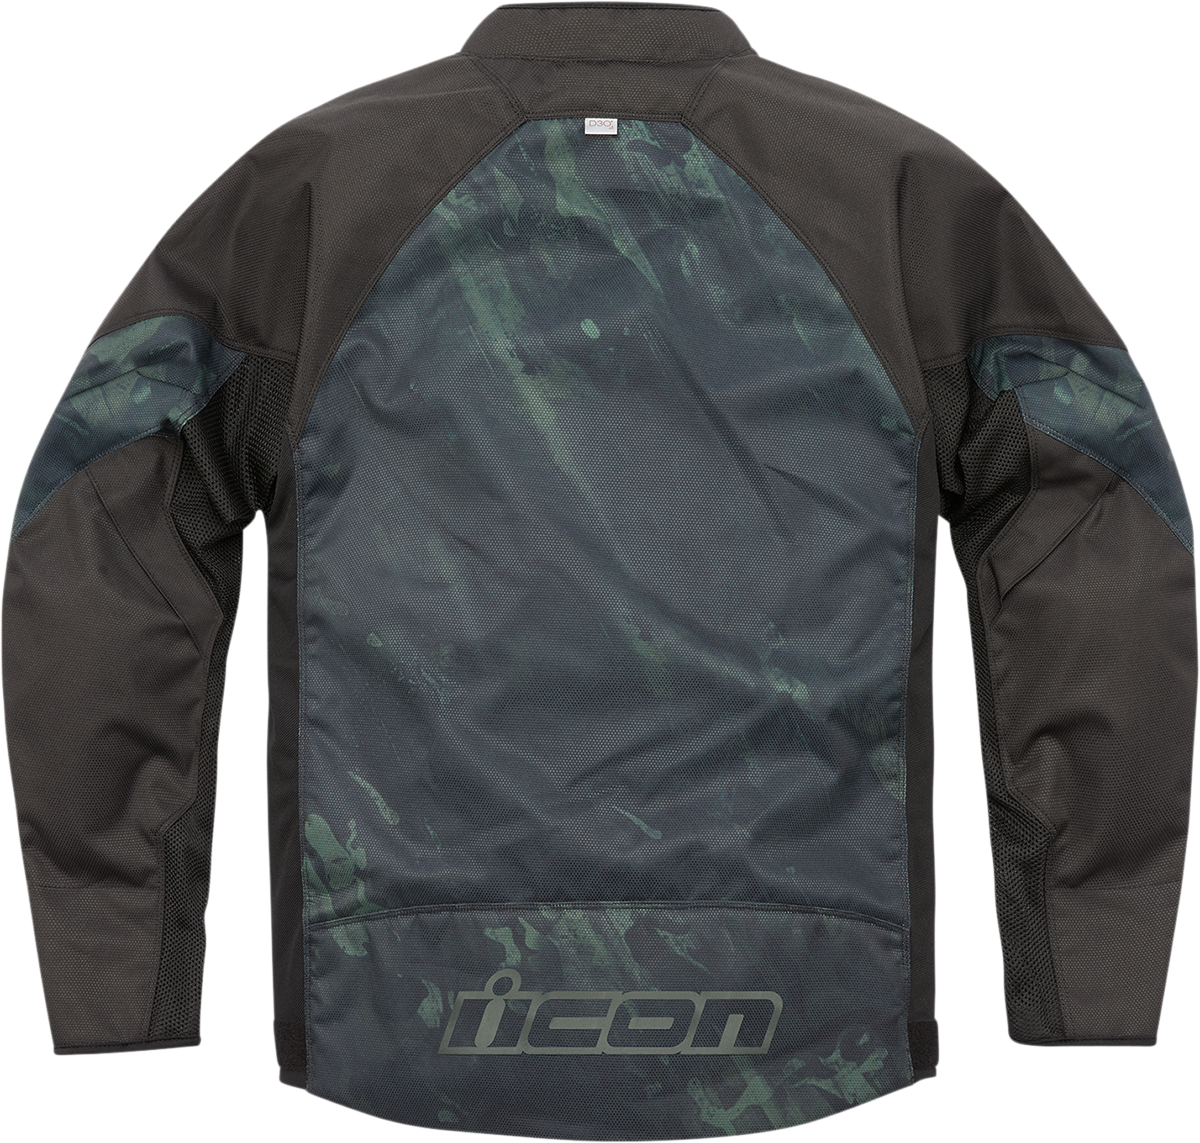 ICON Hooligan Demo™ Jacket - Black - Medium 2820-5547